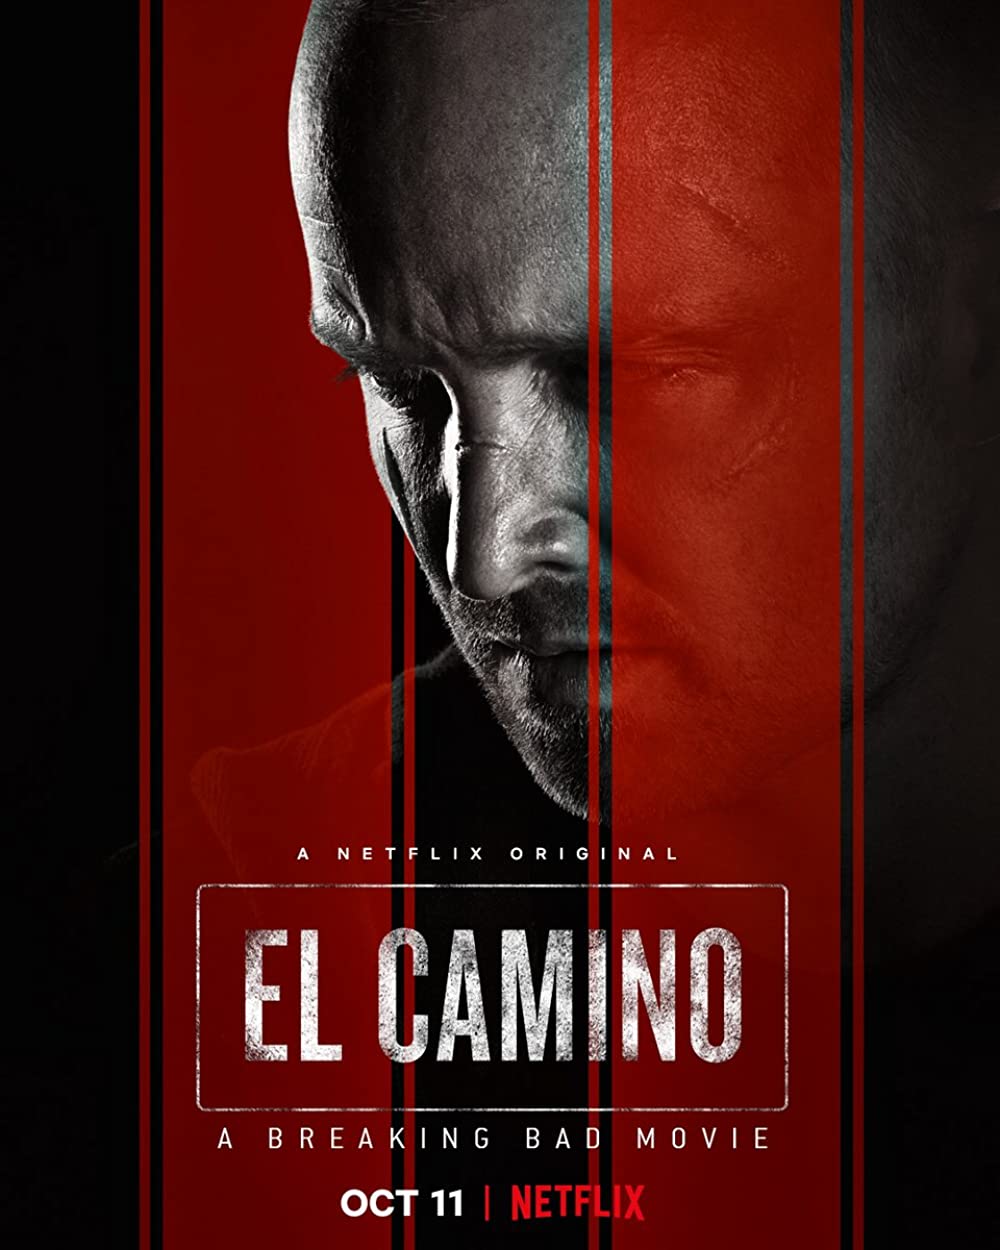 Filmbeschreibung zu El Camino: A Breaking Bad Movie